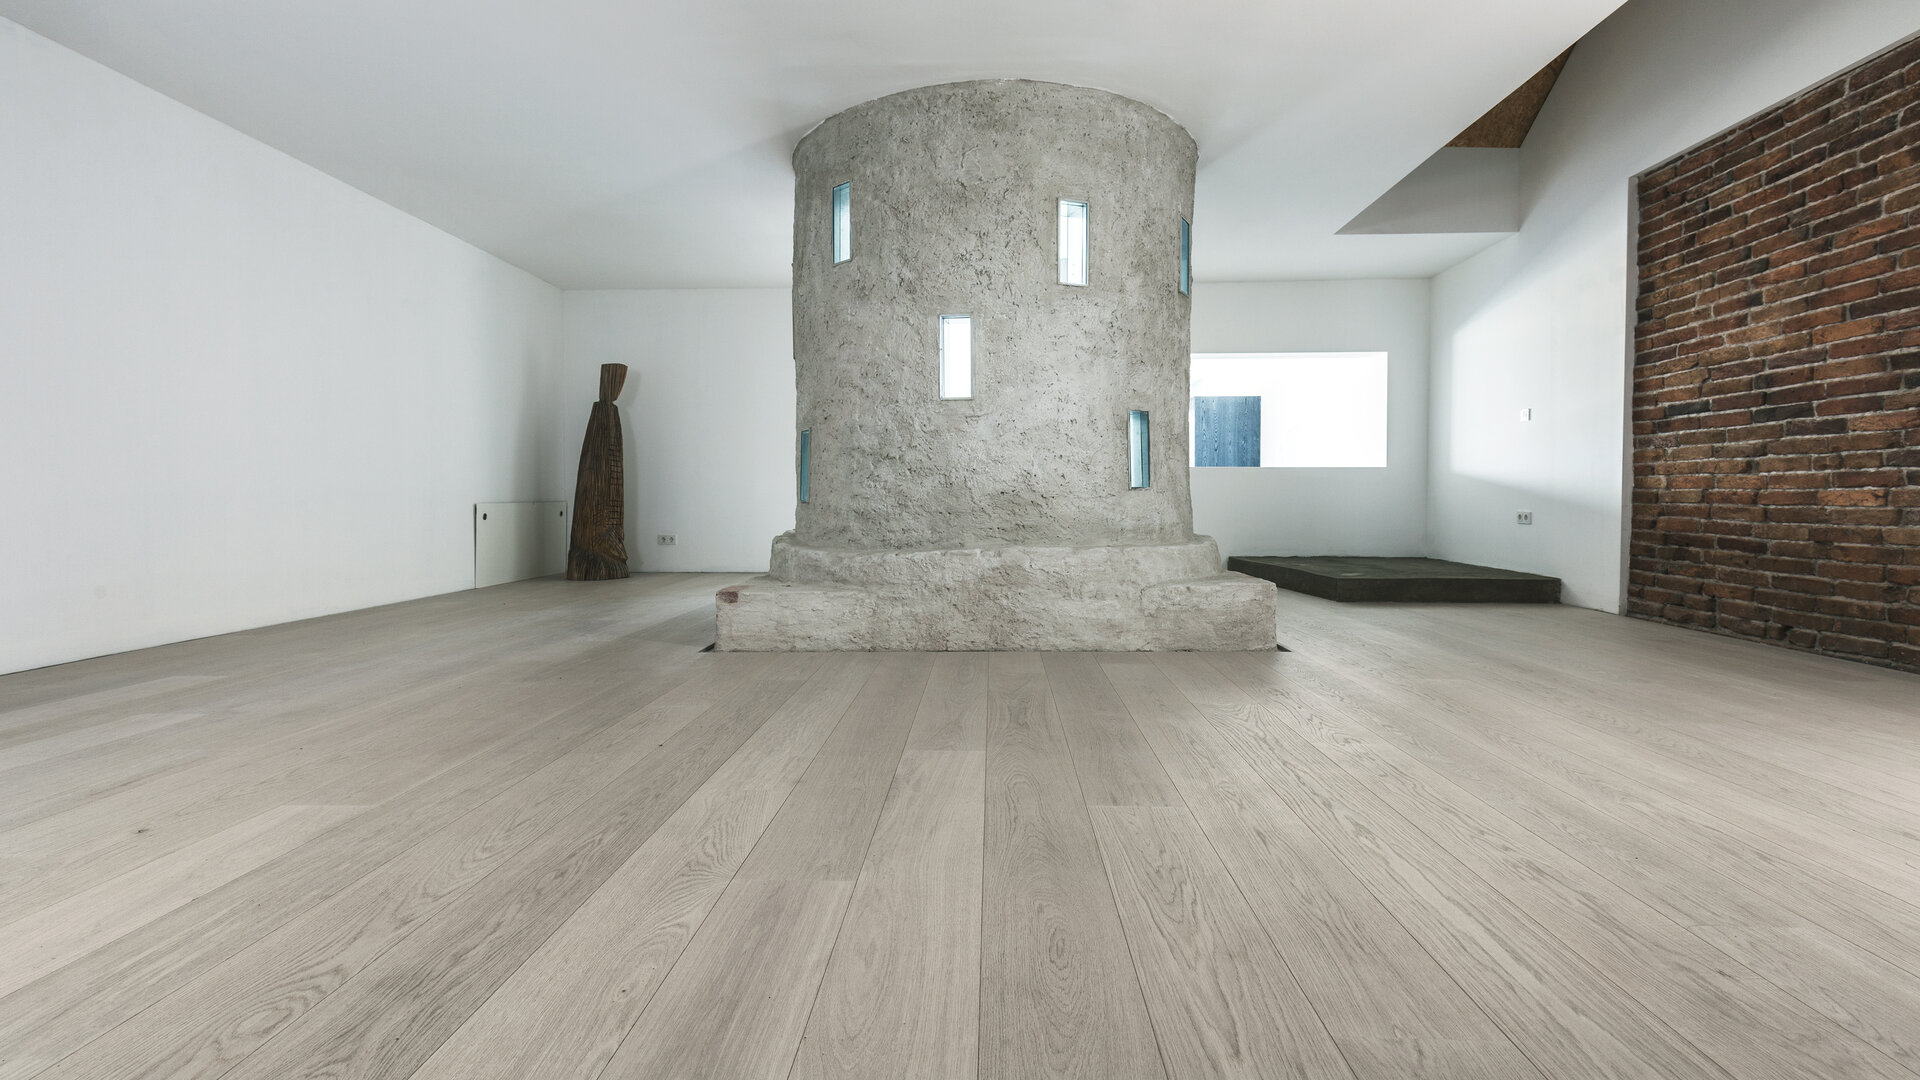 TRAPA Přírodní podlaha
Dub jemně kartáčovaný Carrara